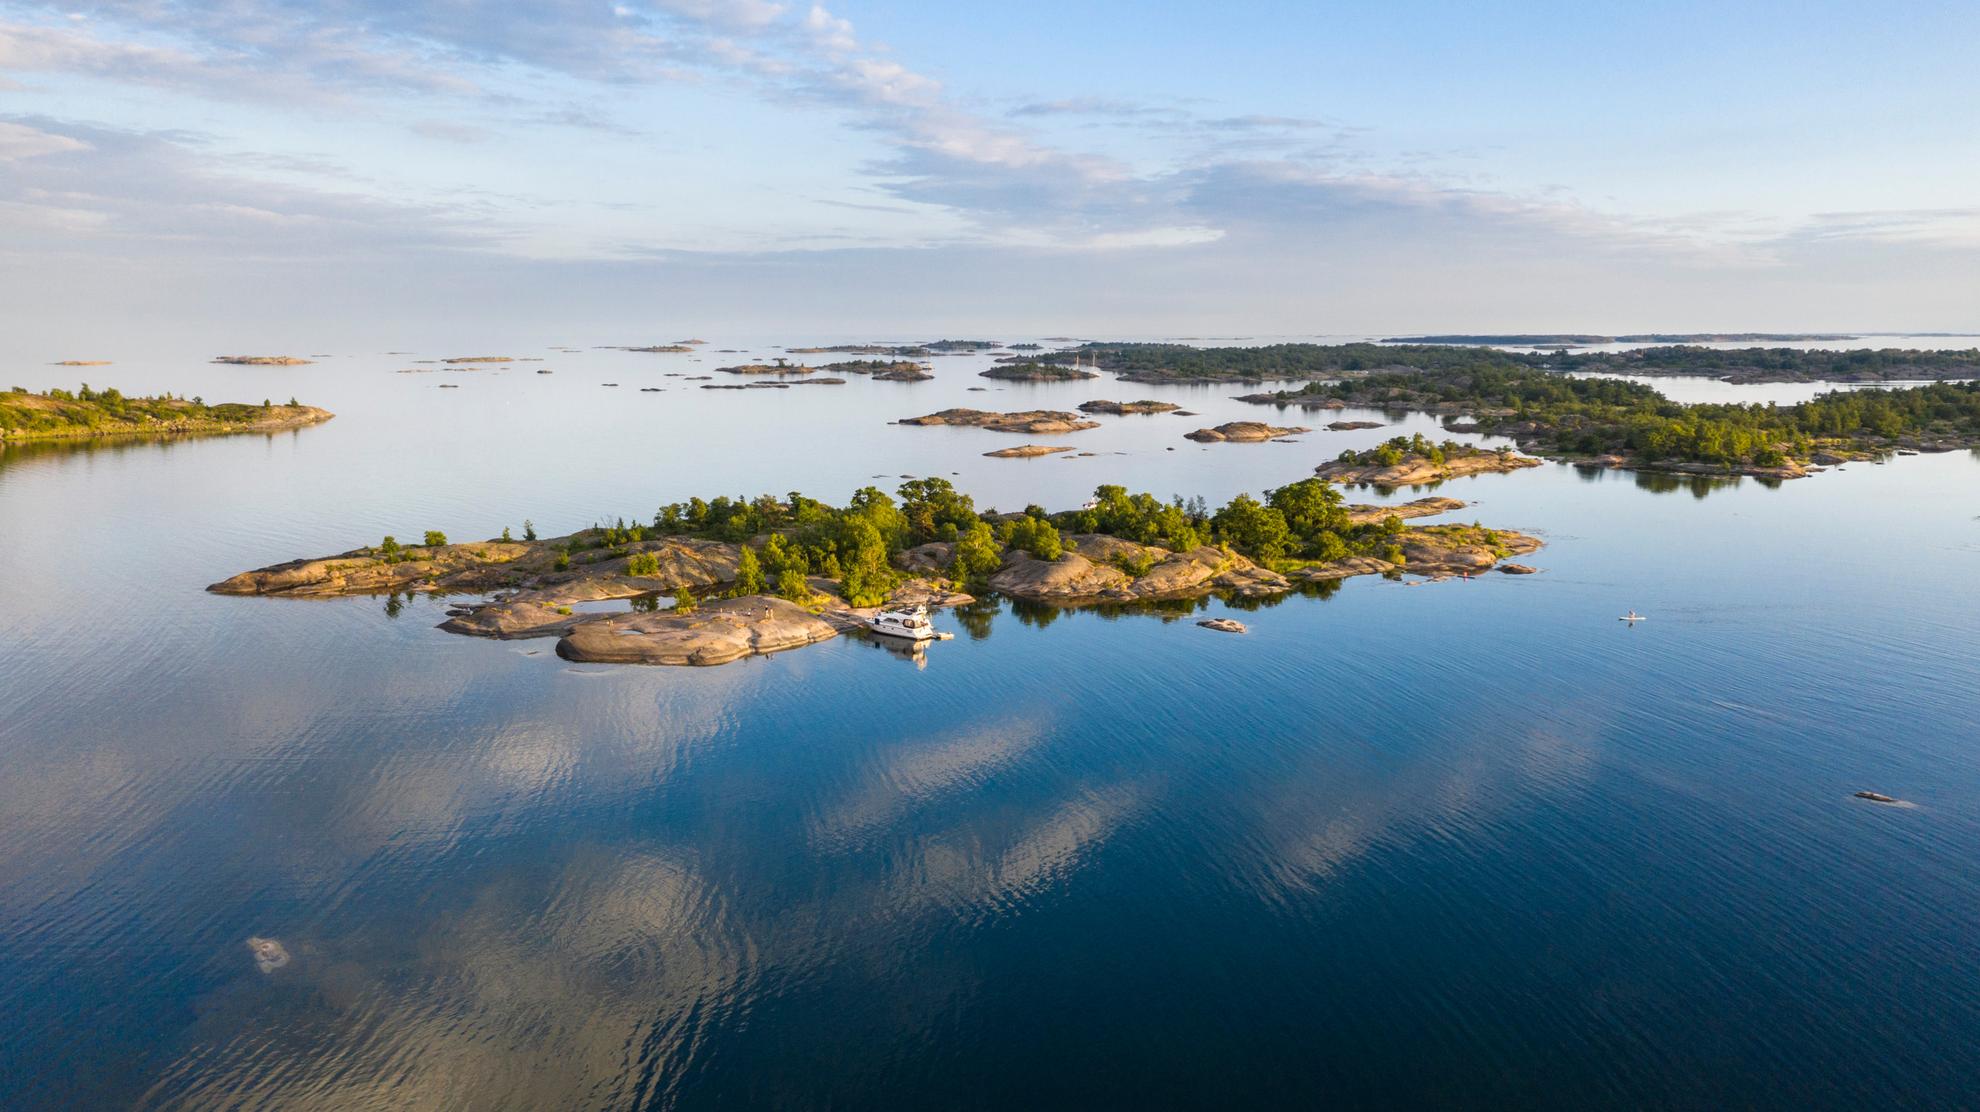 Luchtfoto van een boot naast een eiland in de archipel van Stockholm tijdens een zomerdag.